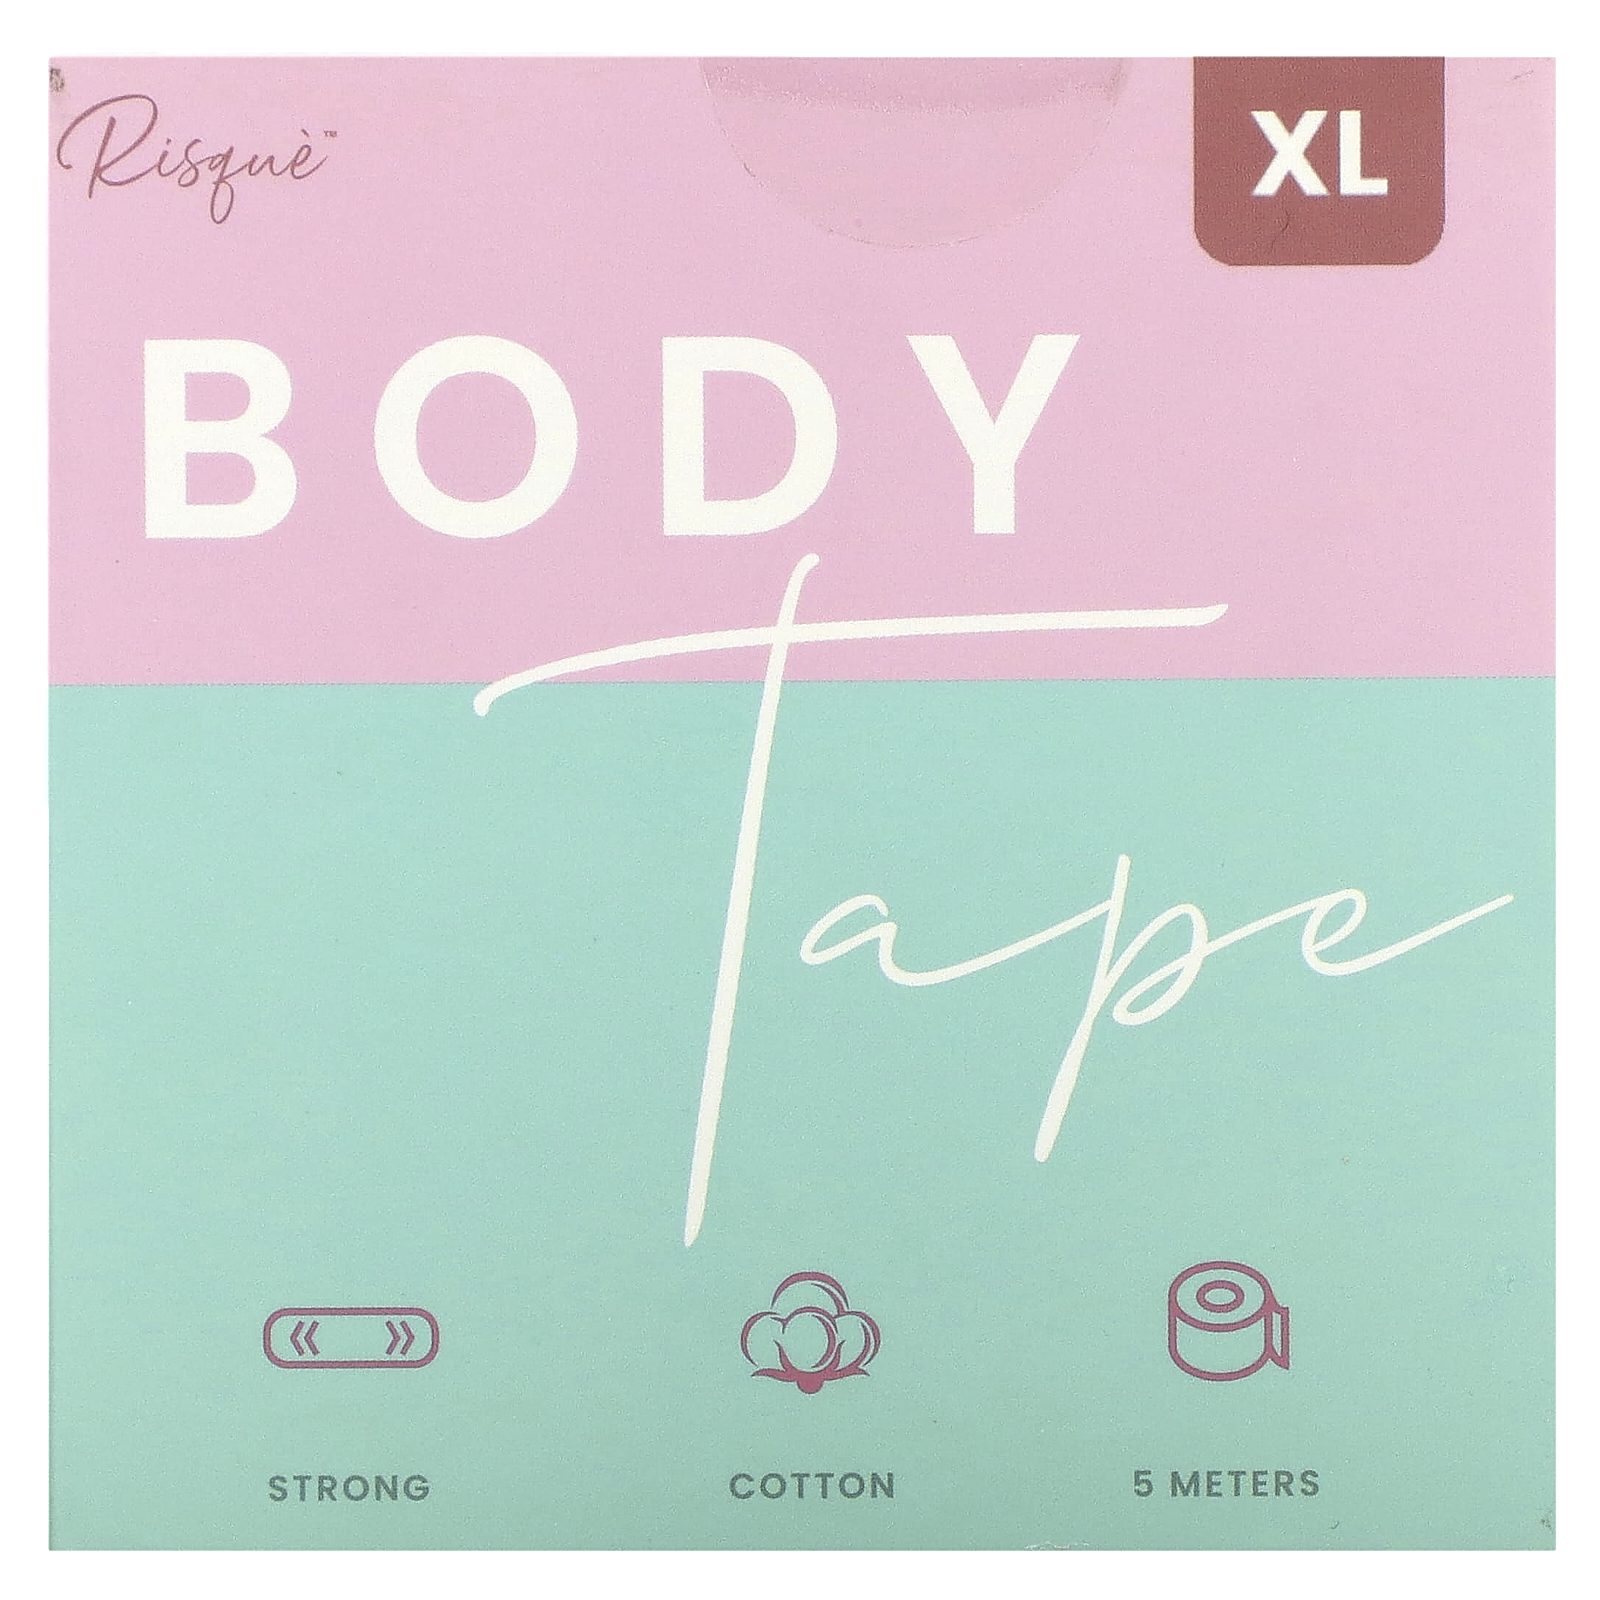 Body Tape XL, Beige, 1 Roll, 5 Meters